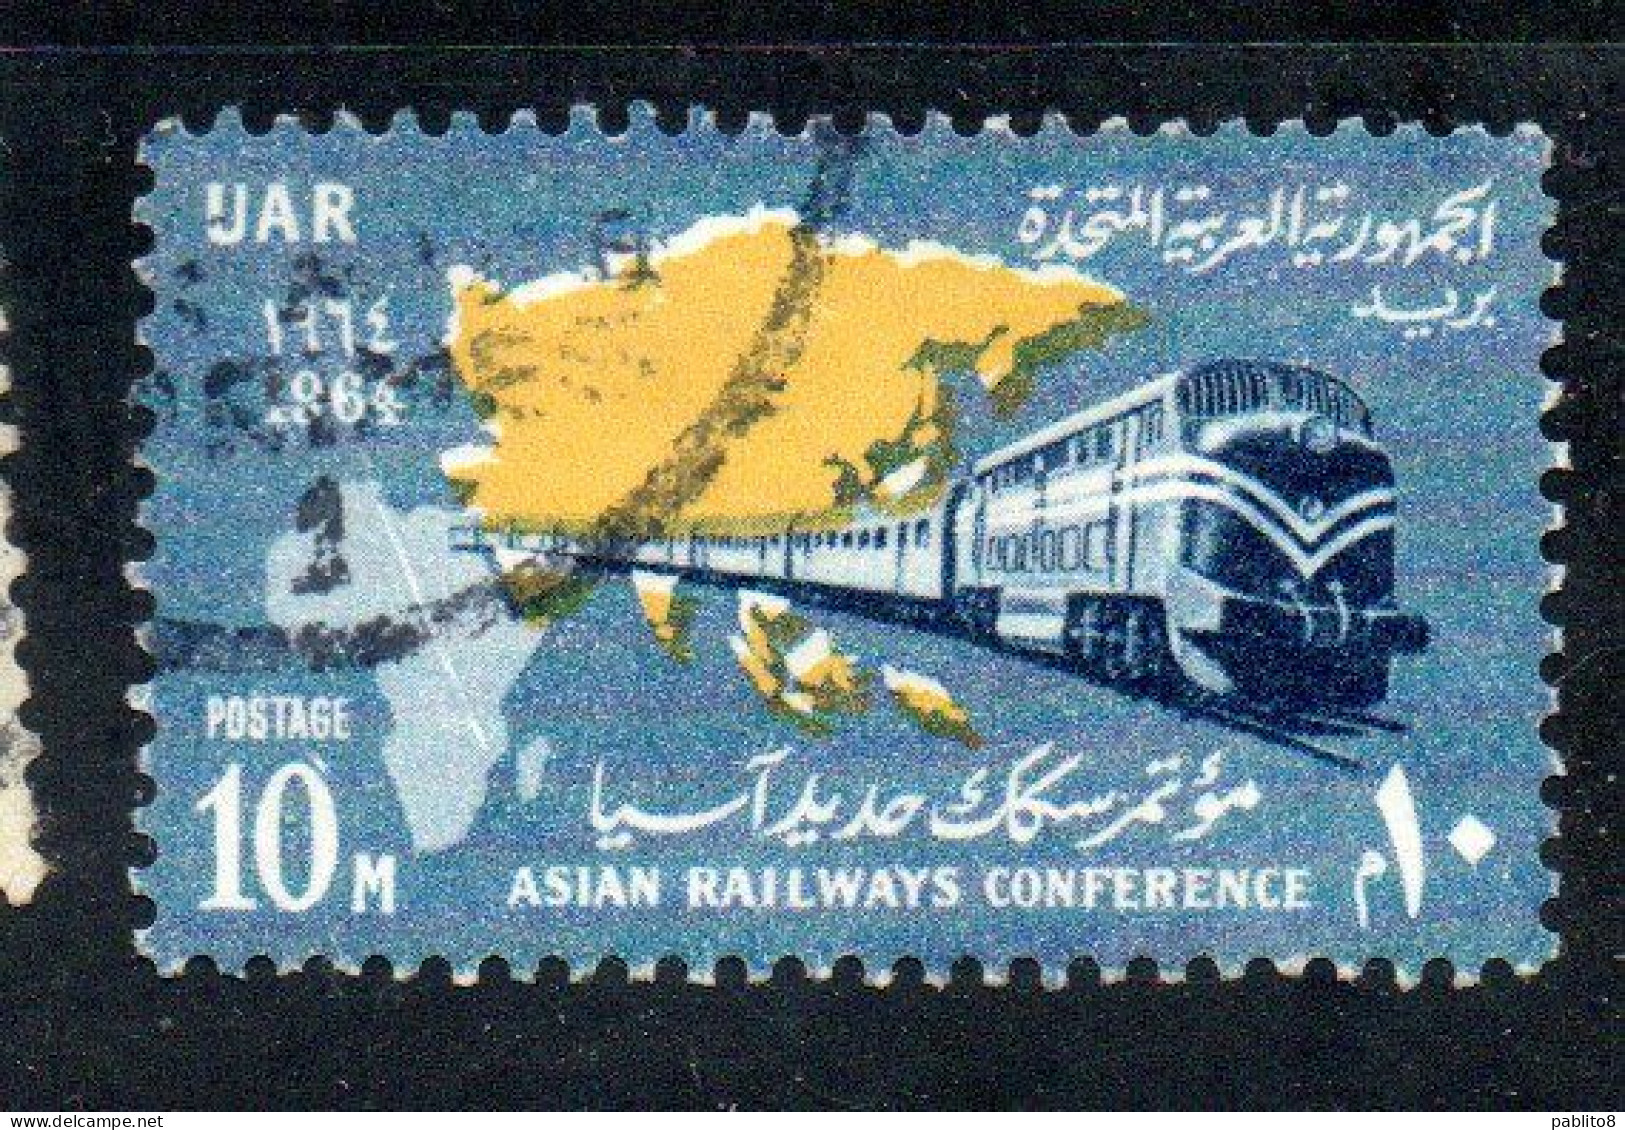 UAR EGYPT EGITTO 1964 ASIAN RAILWAY CONFERENCE CAIRO MAP AND TRAIN 10m USED USATO OBLITERE' - Usati